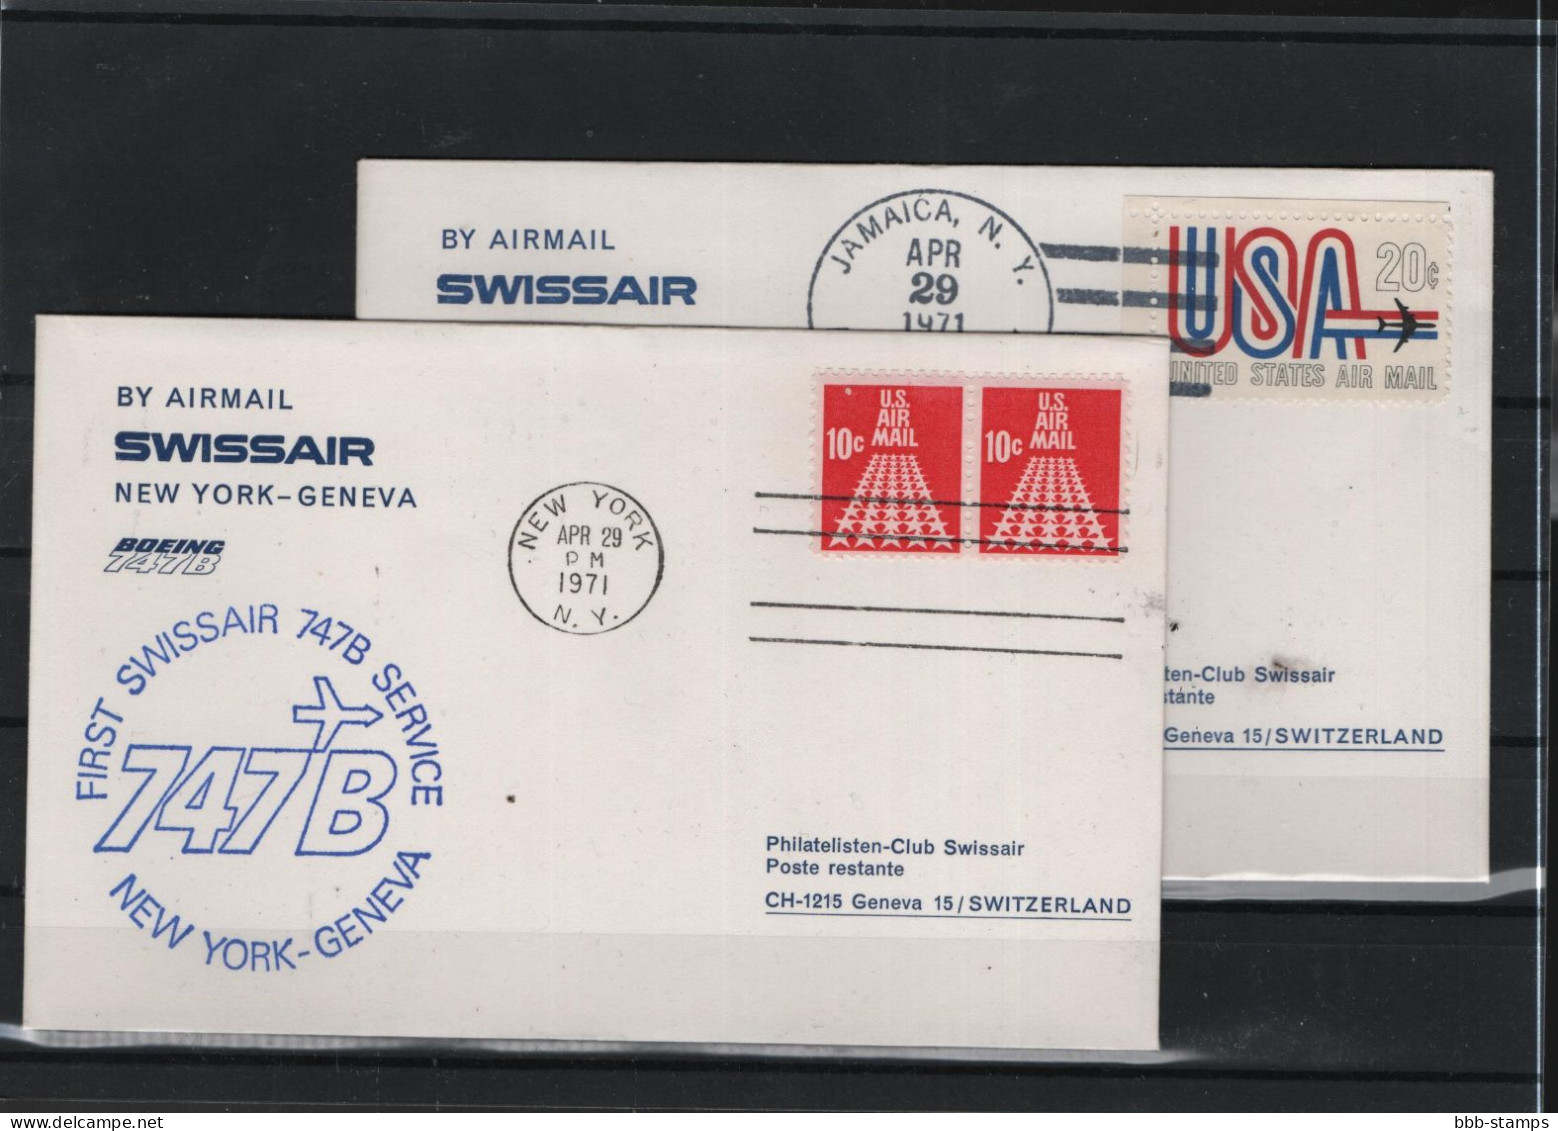 Schweiz Luftpost FFC Swissair 29.4.1971 New York - Genf - Erst- U. Sonderflugbriefe